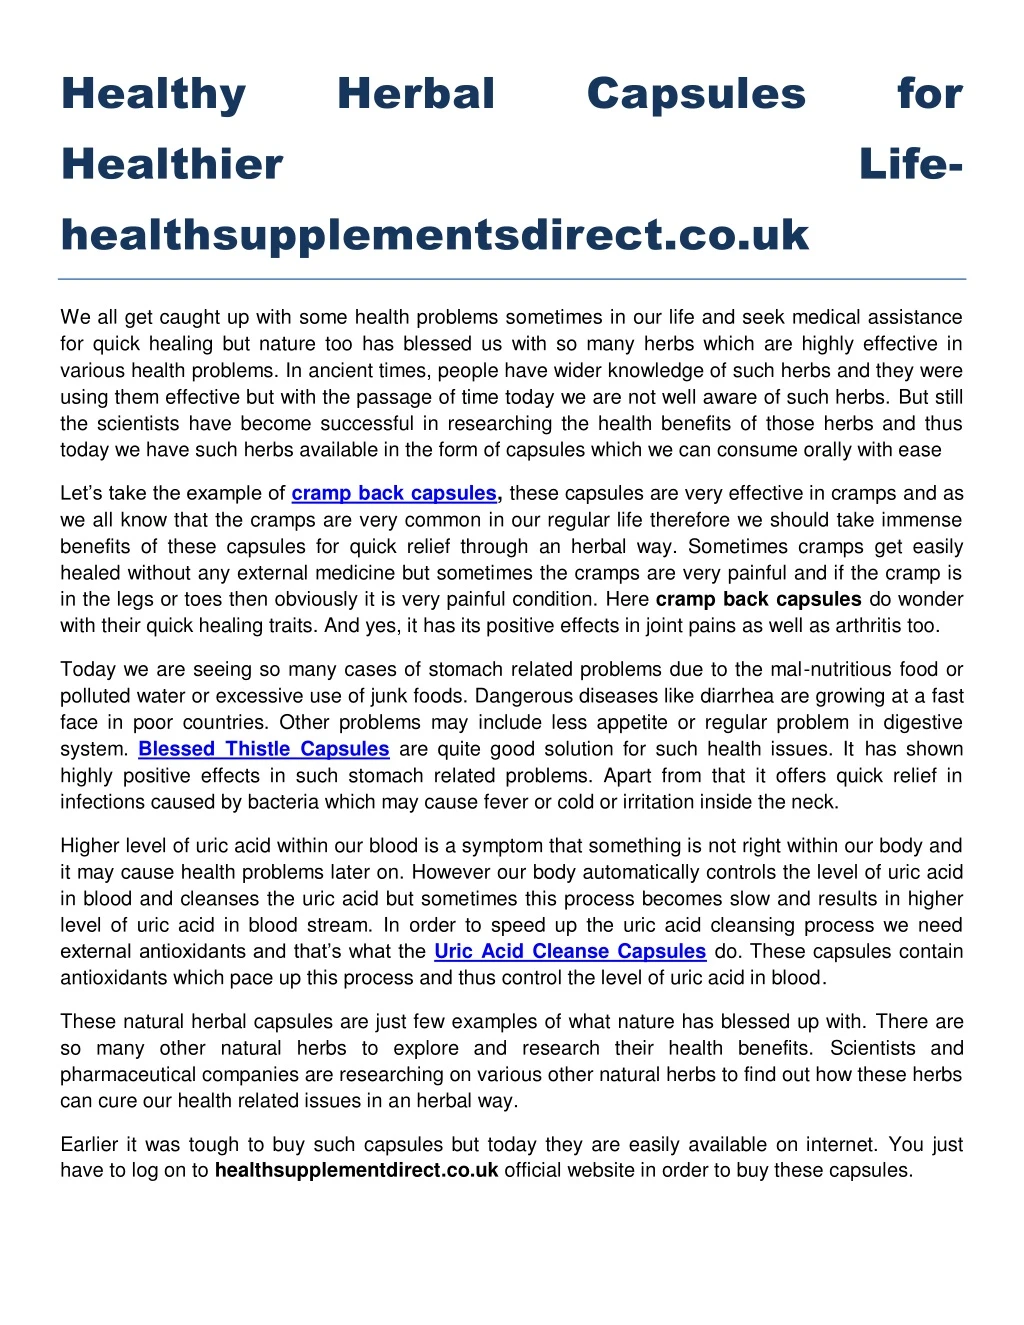 healthy healthier healthsupplementsdirect co uk